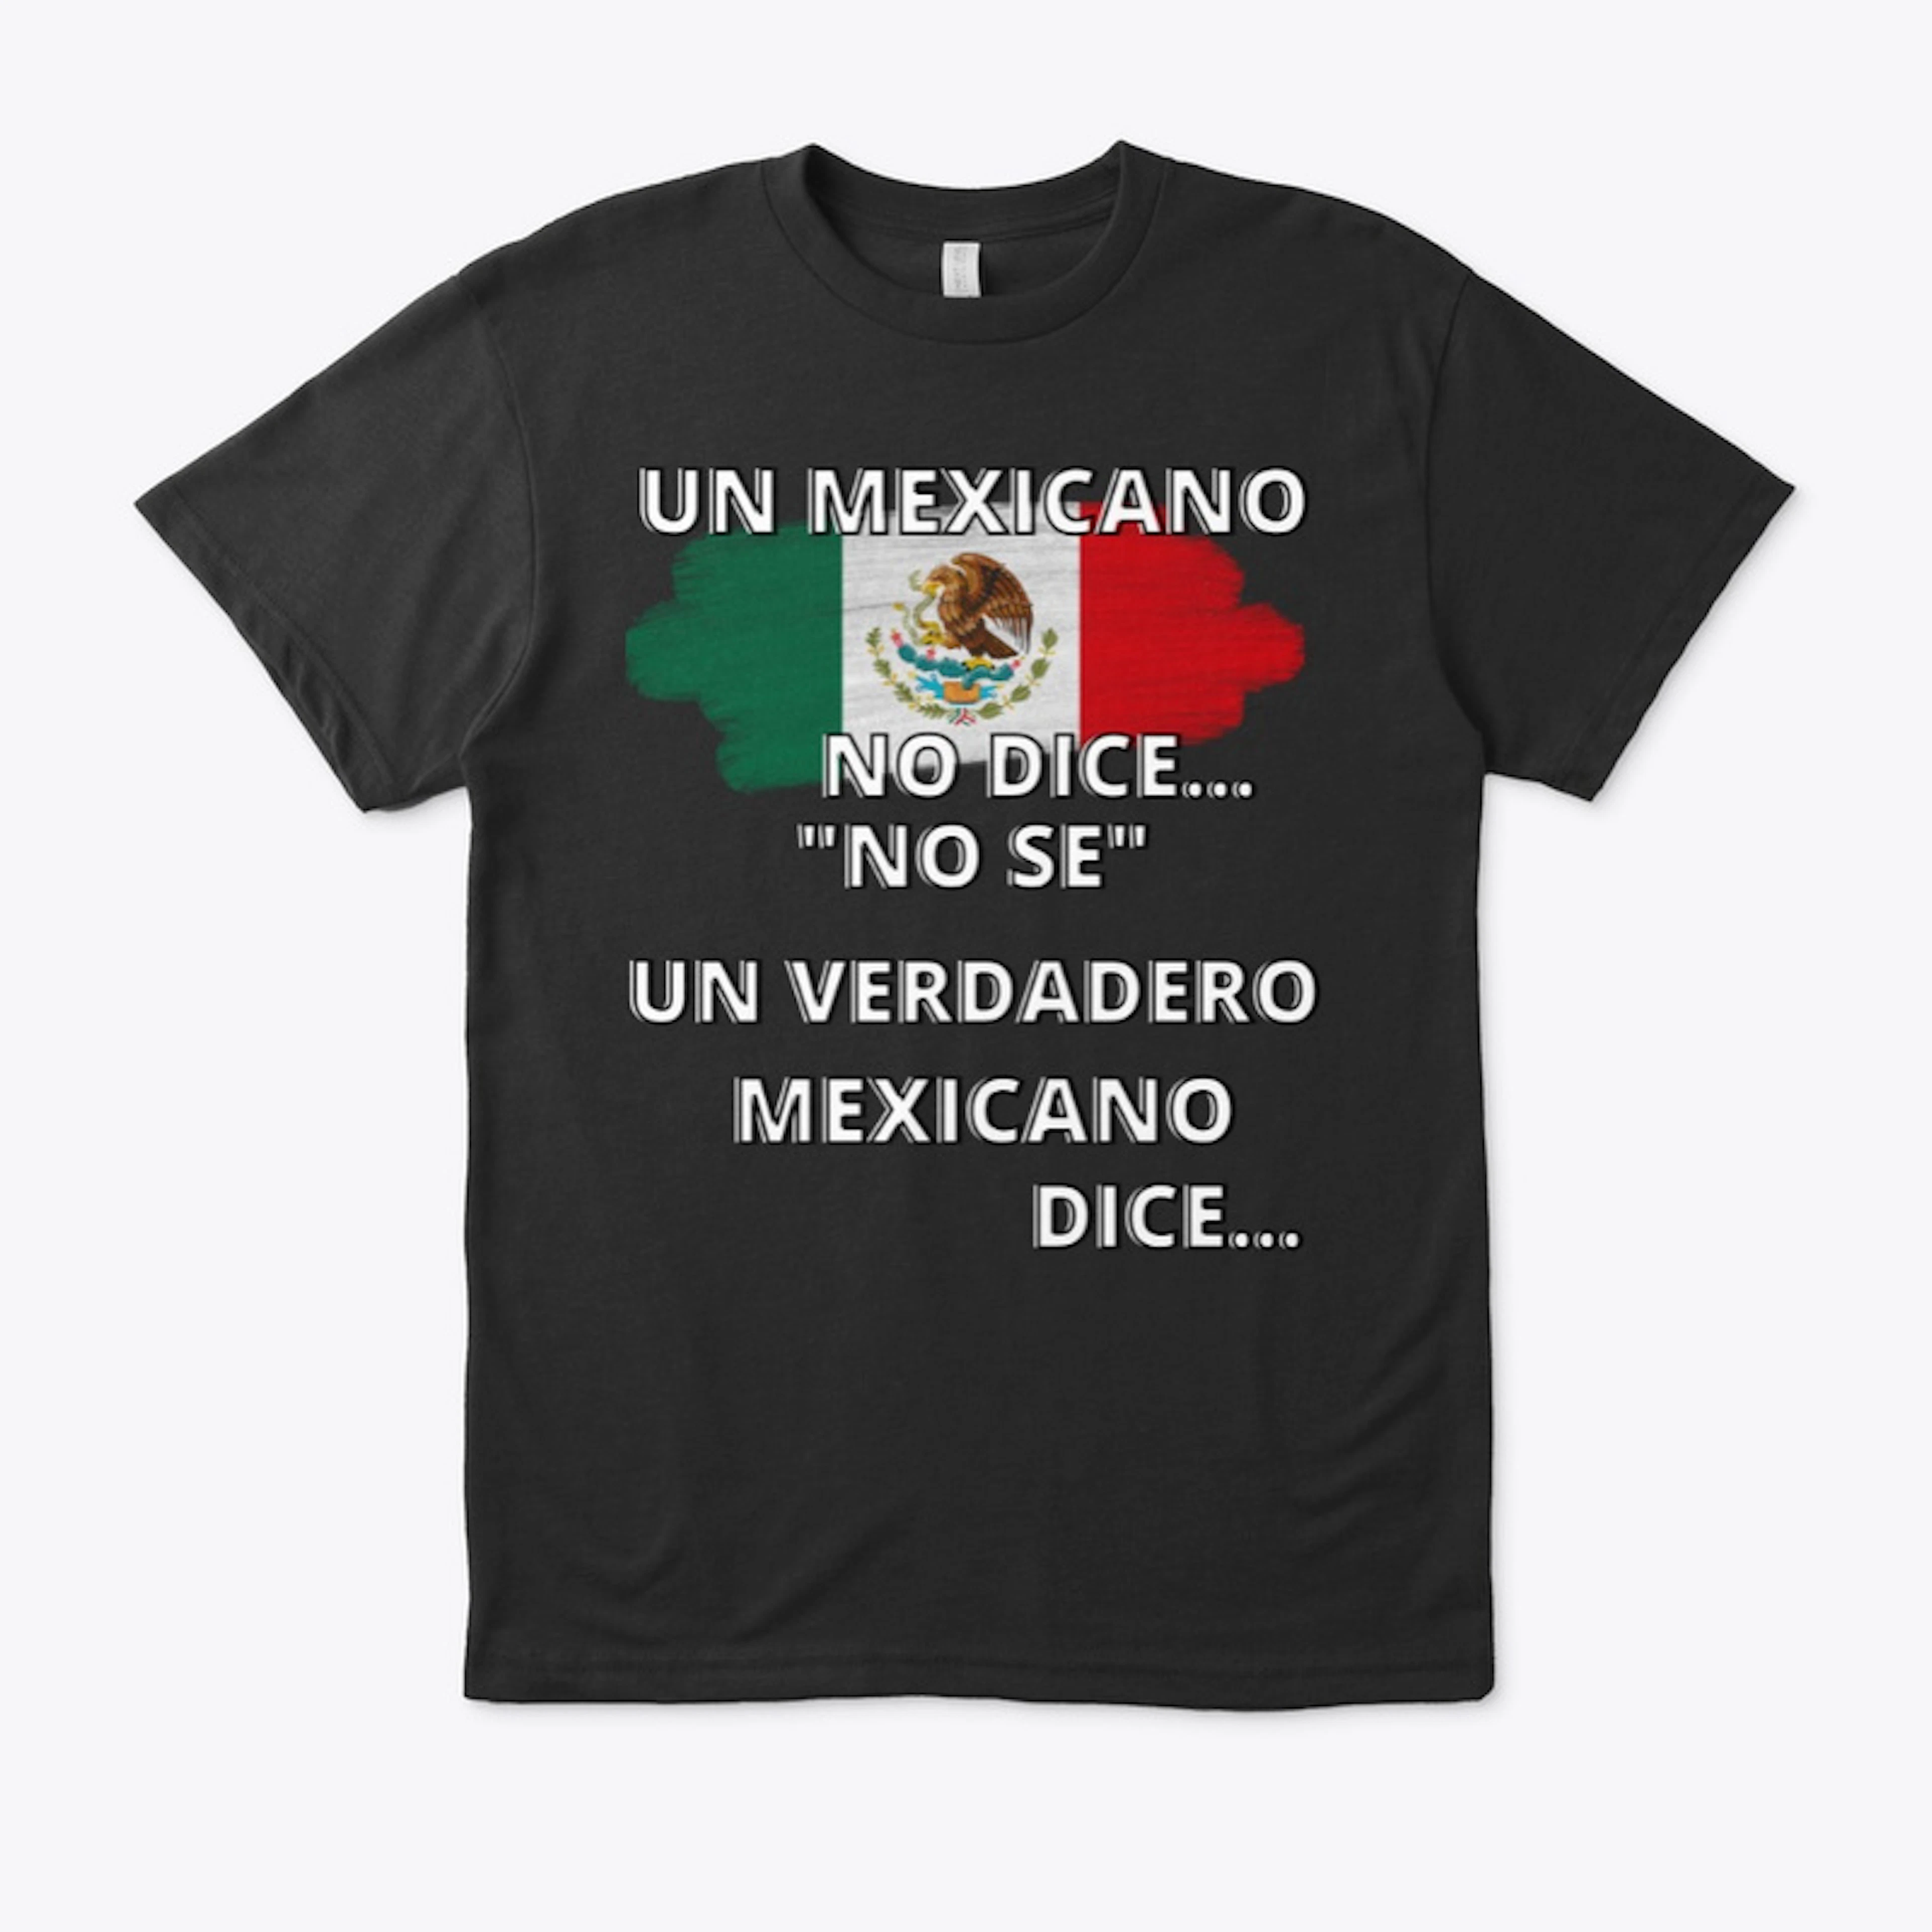 UN MEXICANO NO DICE...